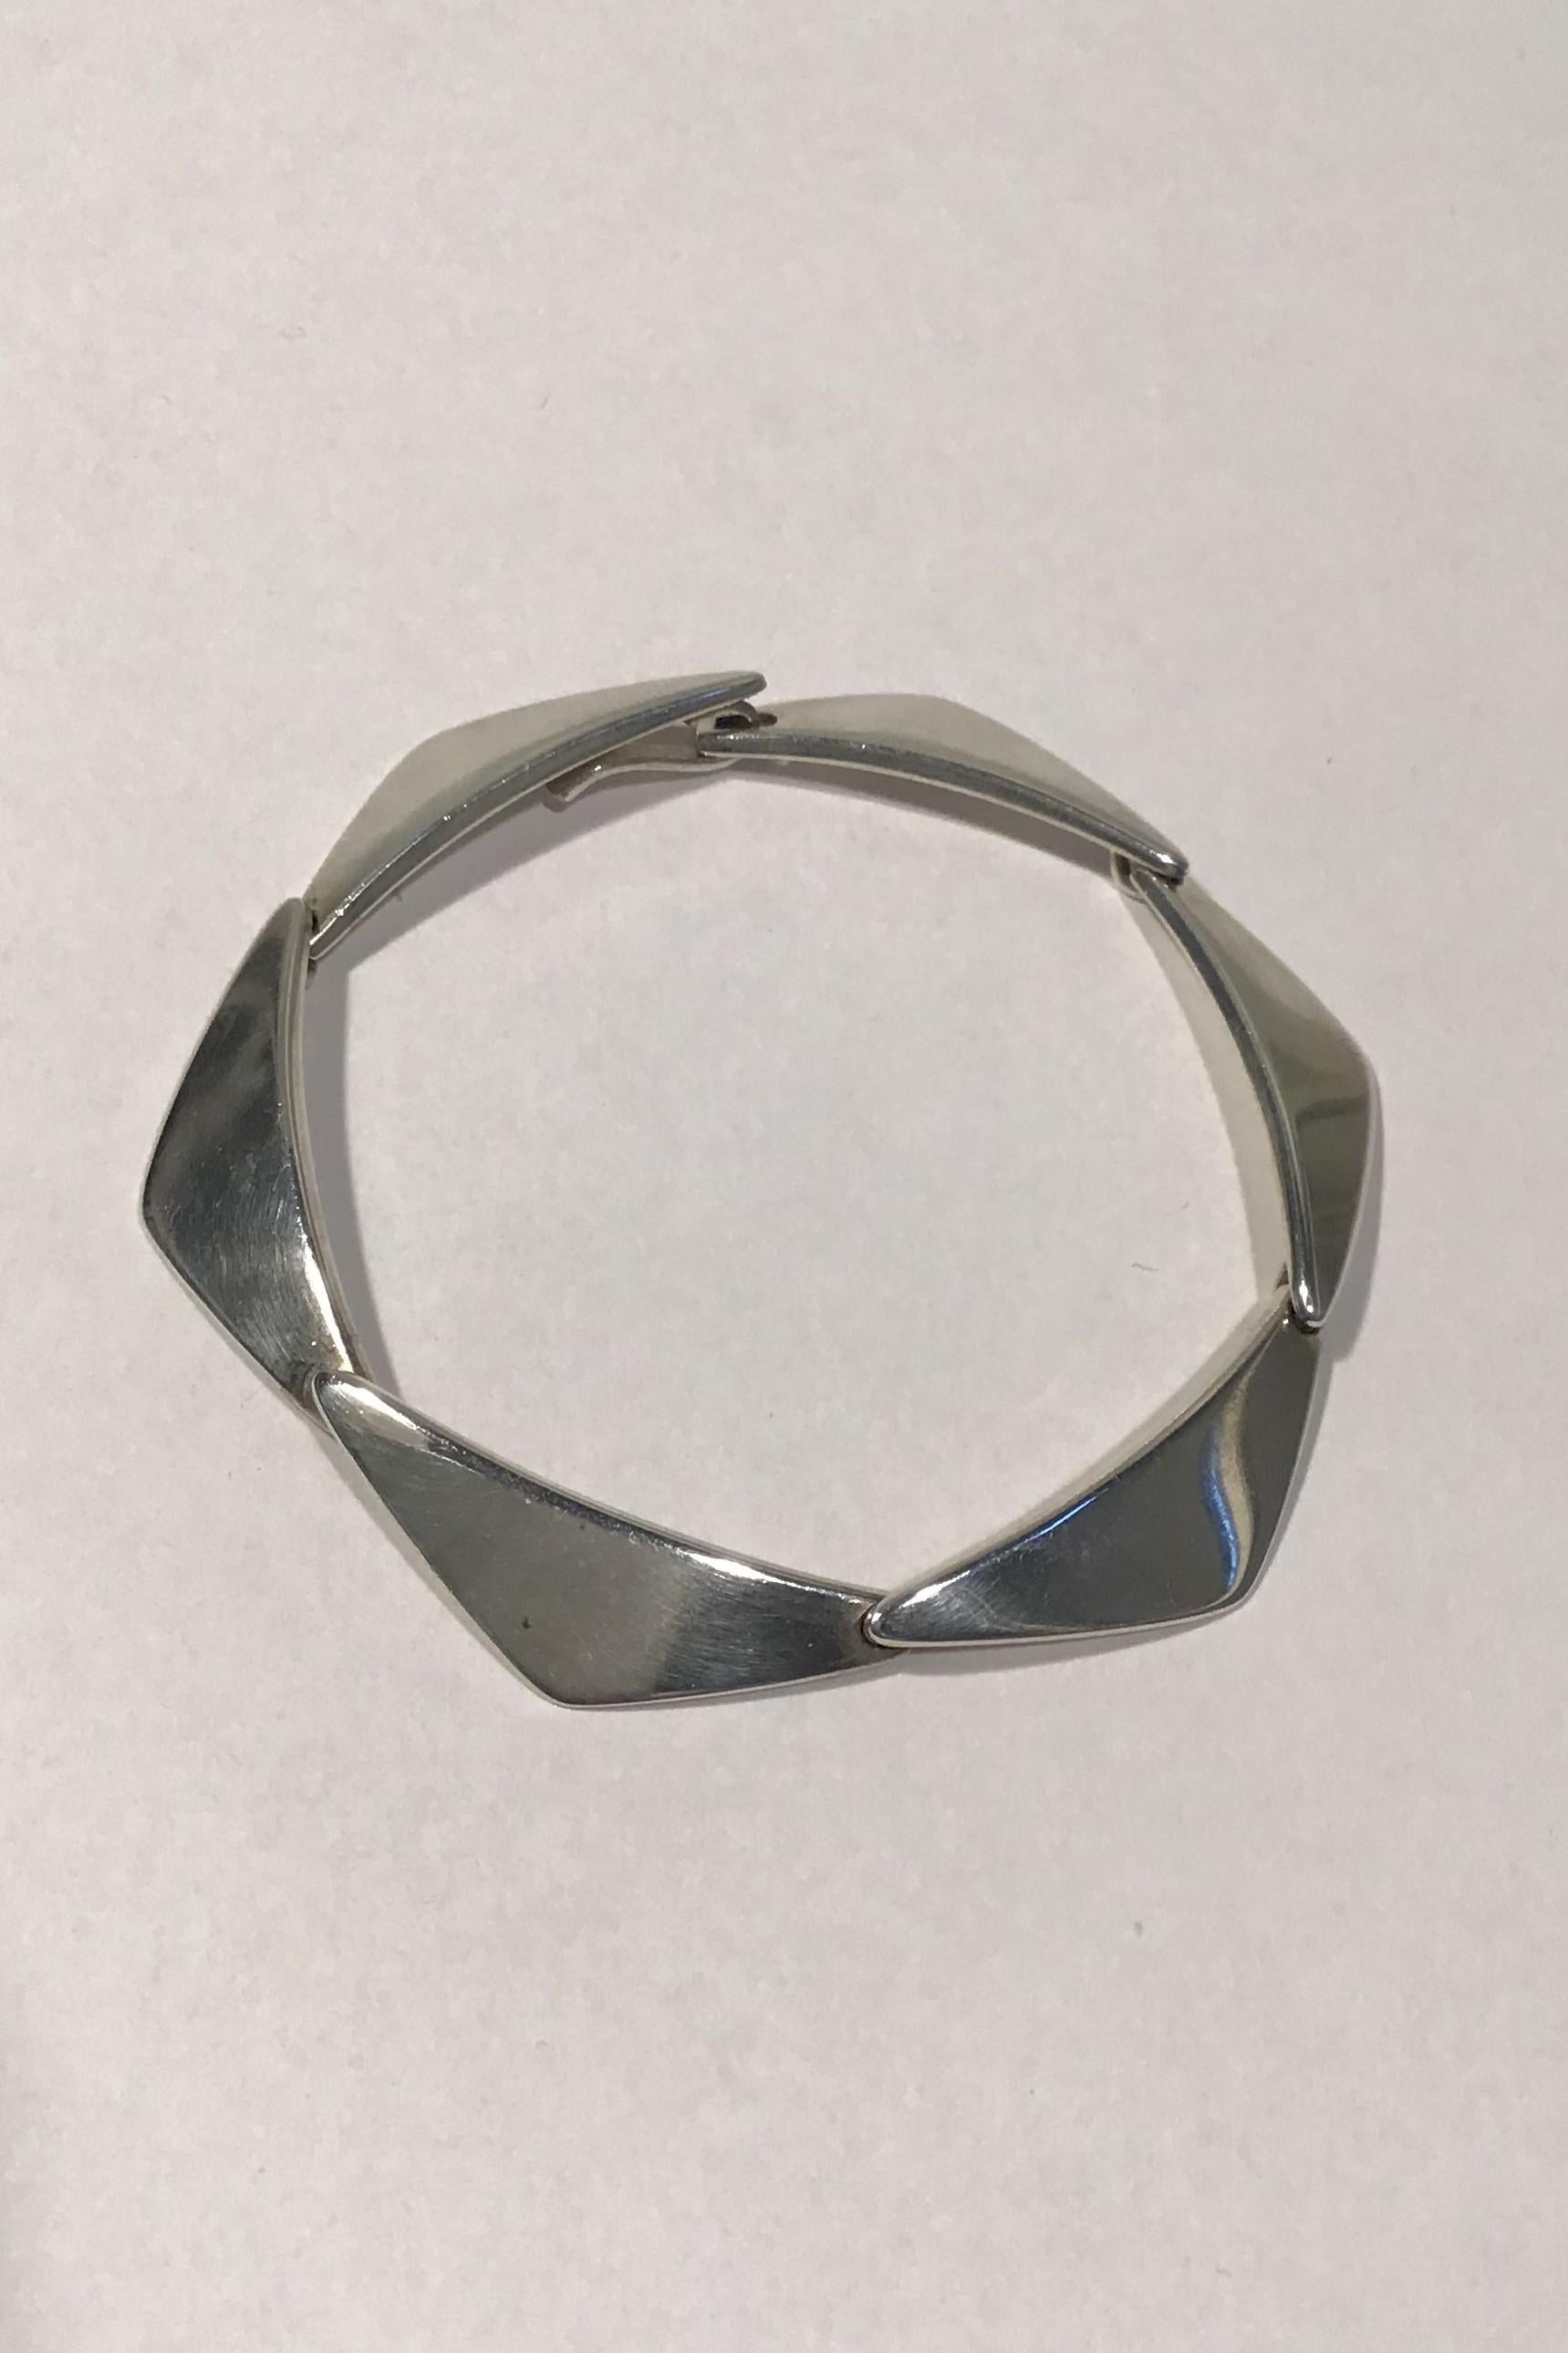 Hans Hansen Sterling Silver Bracelet No 238 (6 links)

Measures L 17.5 cm(6 57/64 in) 
Weight 16.1 gr/0.57 oz